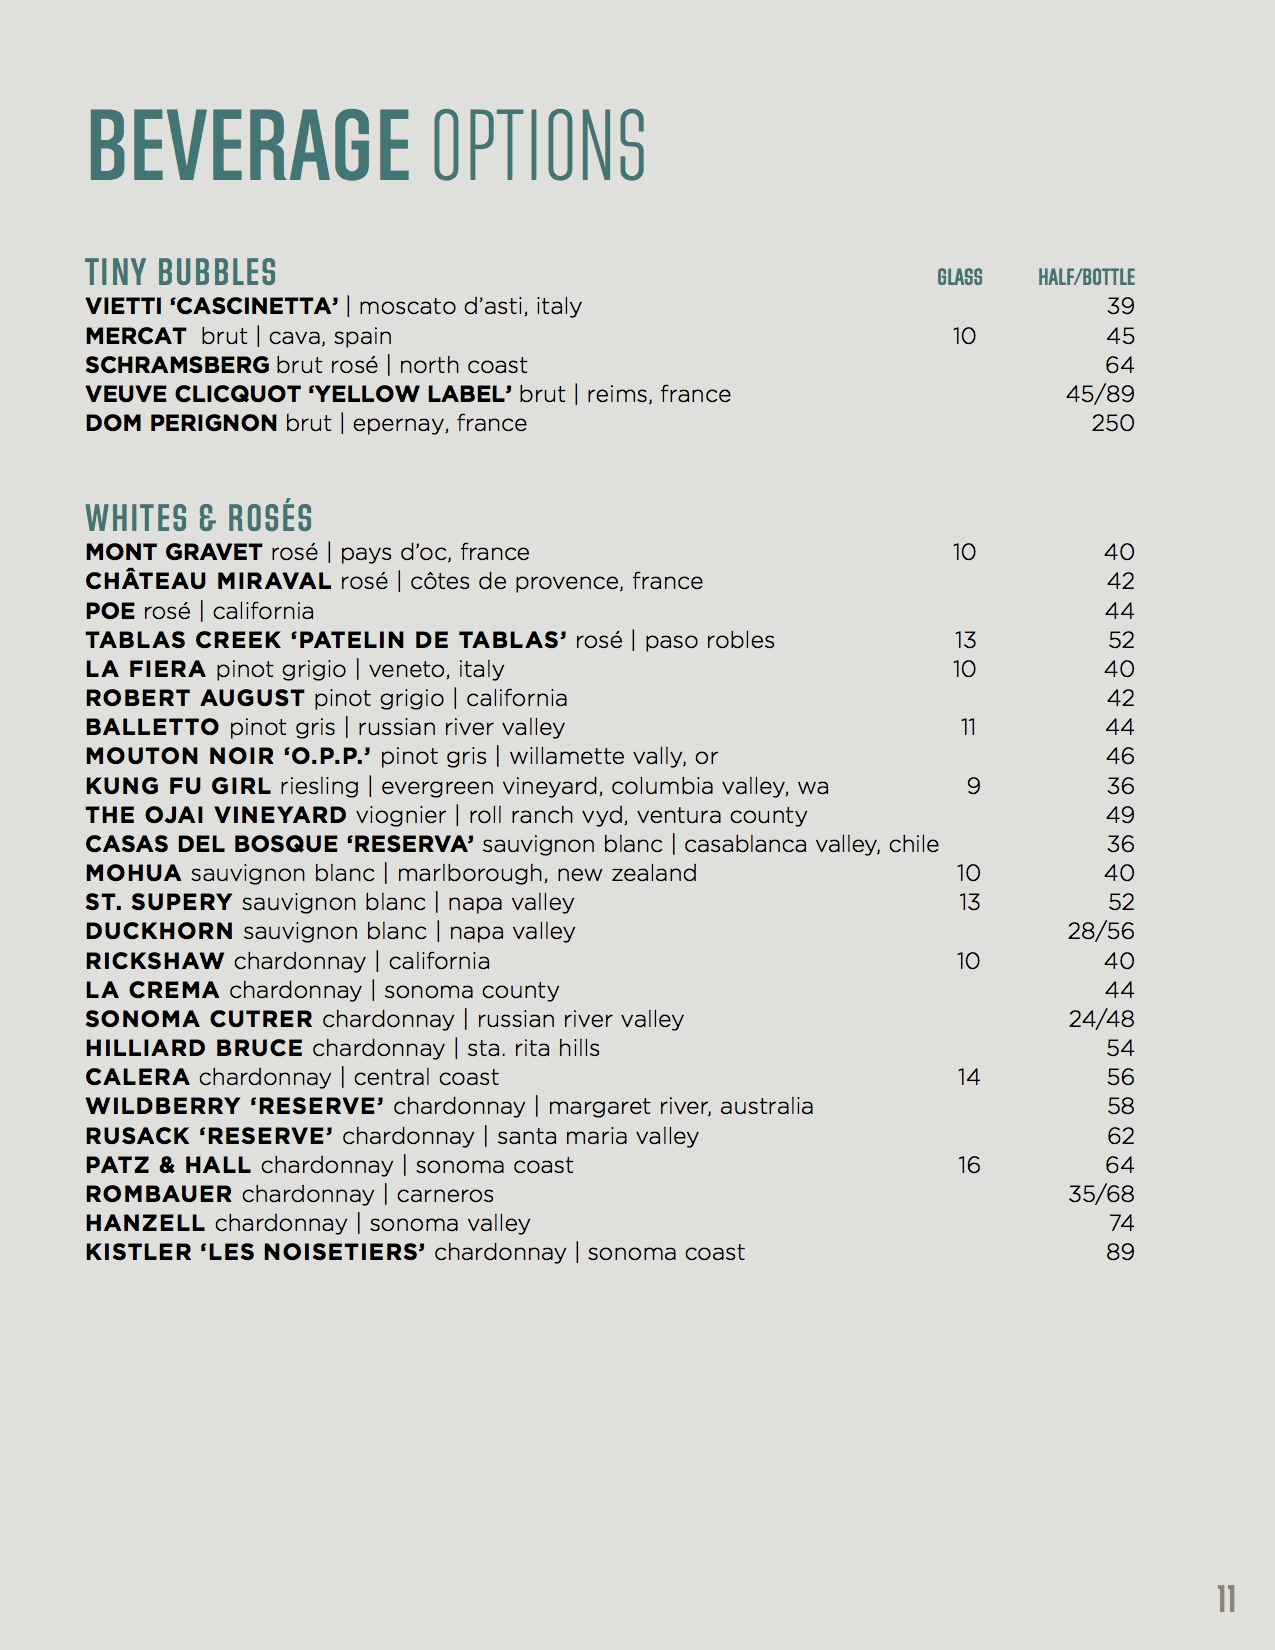 banquet menu - beverage menu options